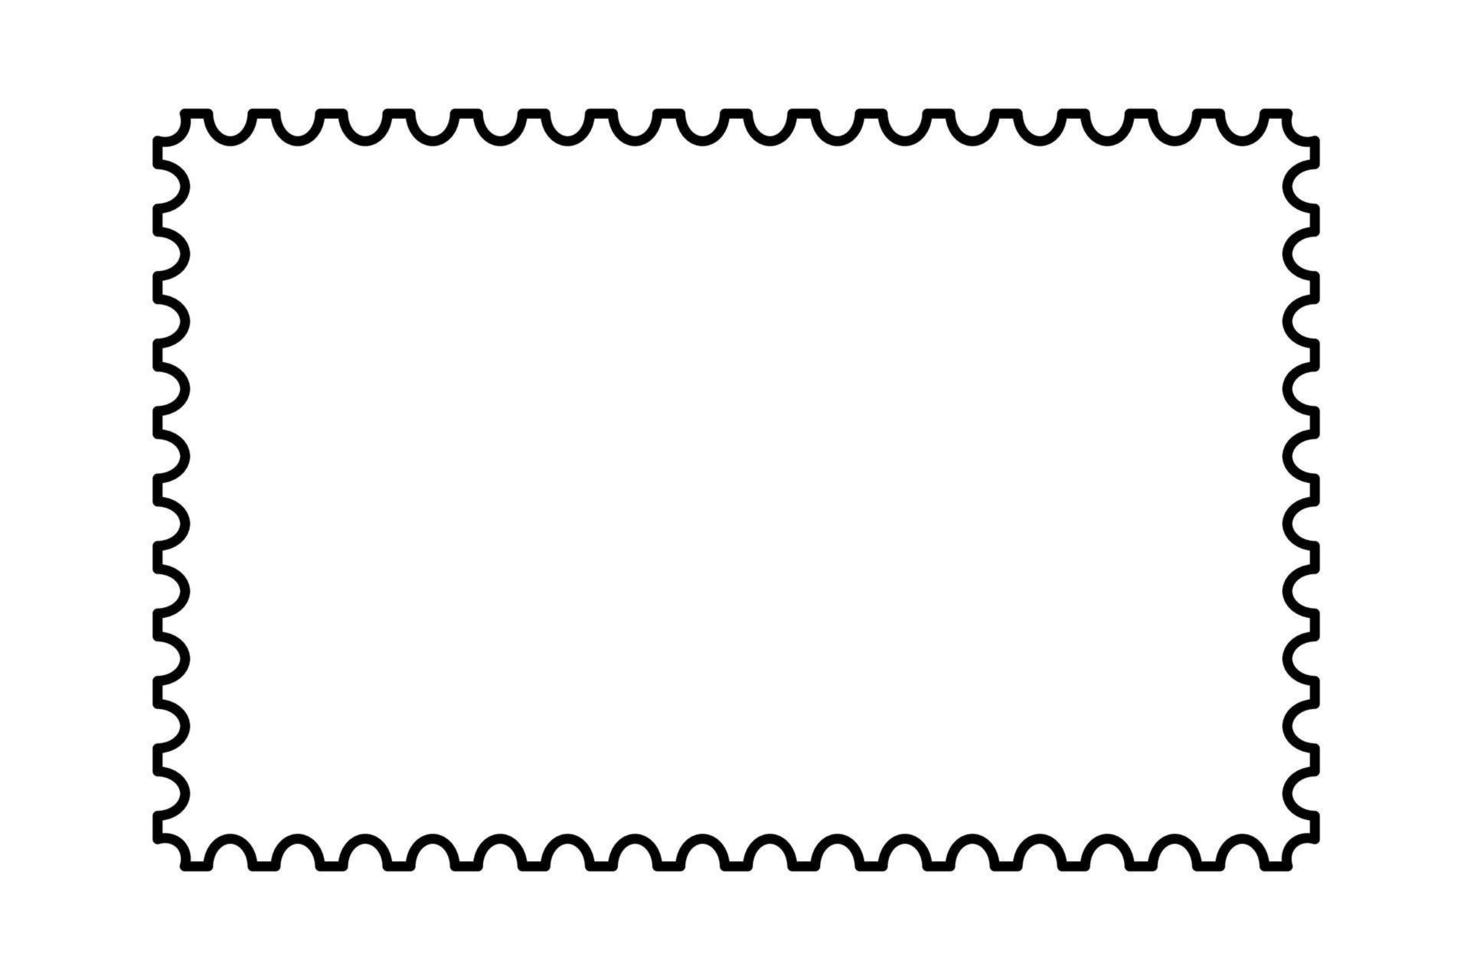 cadre de timbre-poste. modèle de bordure vide pour cartes postales et lettres. rectangle vierge et timbre-poste carré avec bord perforé. illustration vectorielle isolée sur fond blanc vecteur